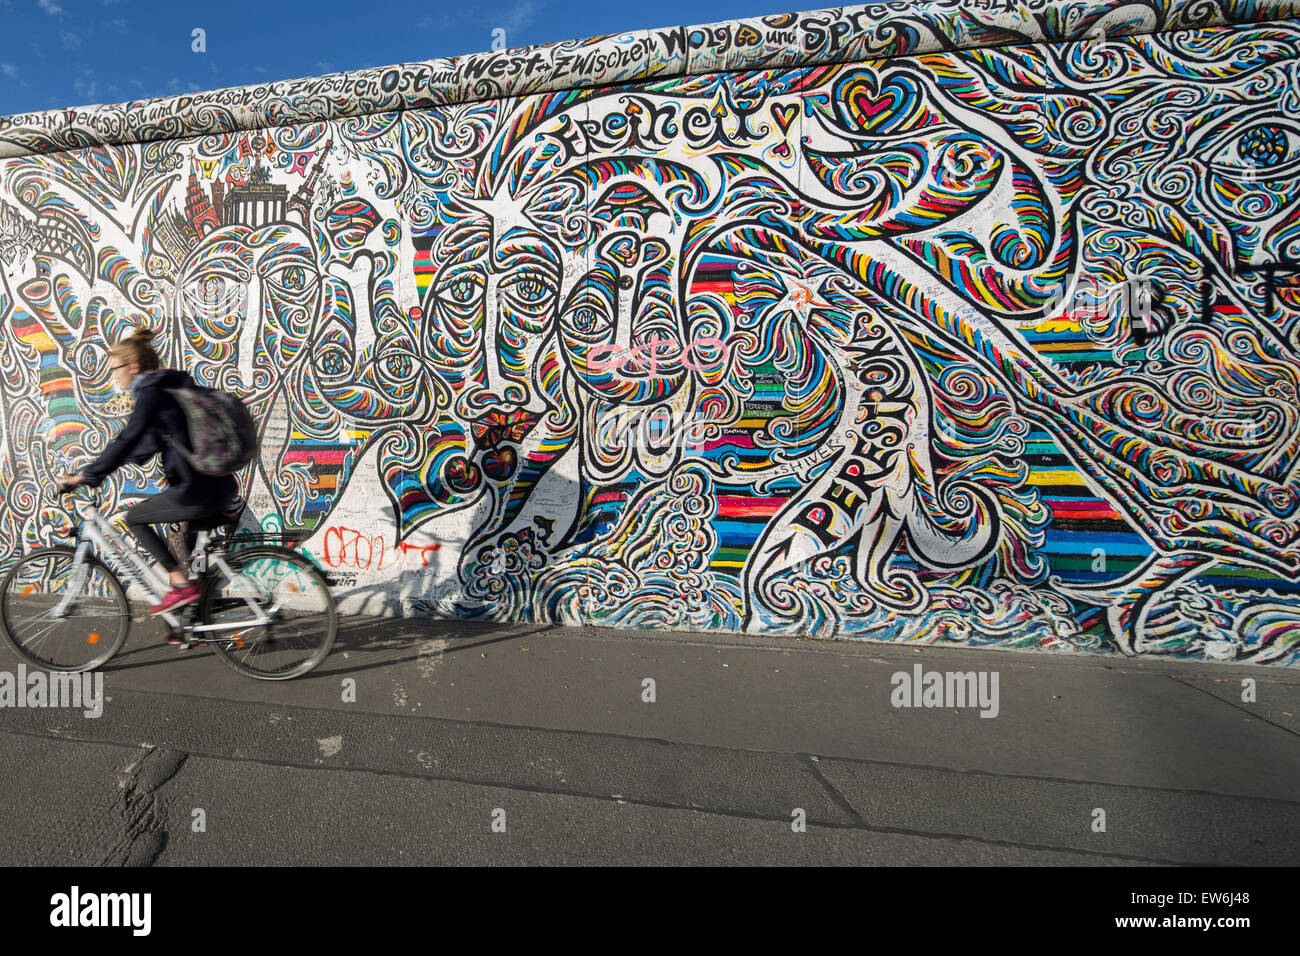 Mur de Berlin, East Side Gallery, Berlin, Allemagne Banque D'Images